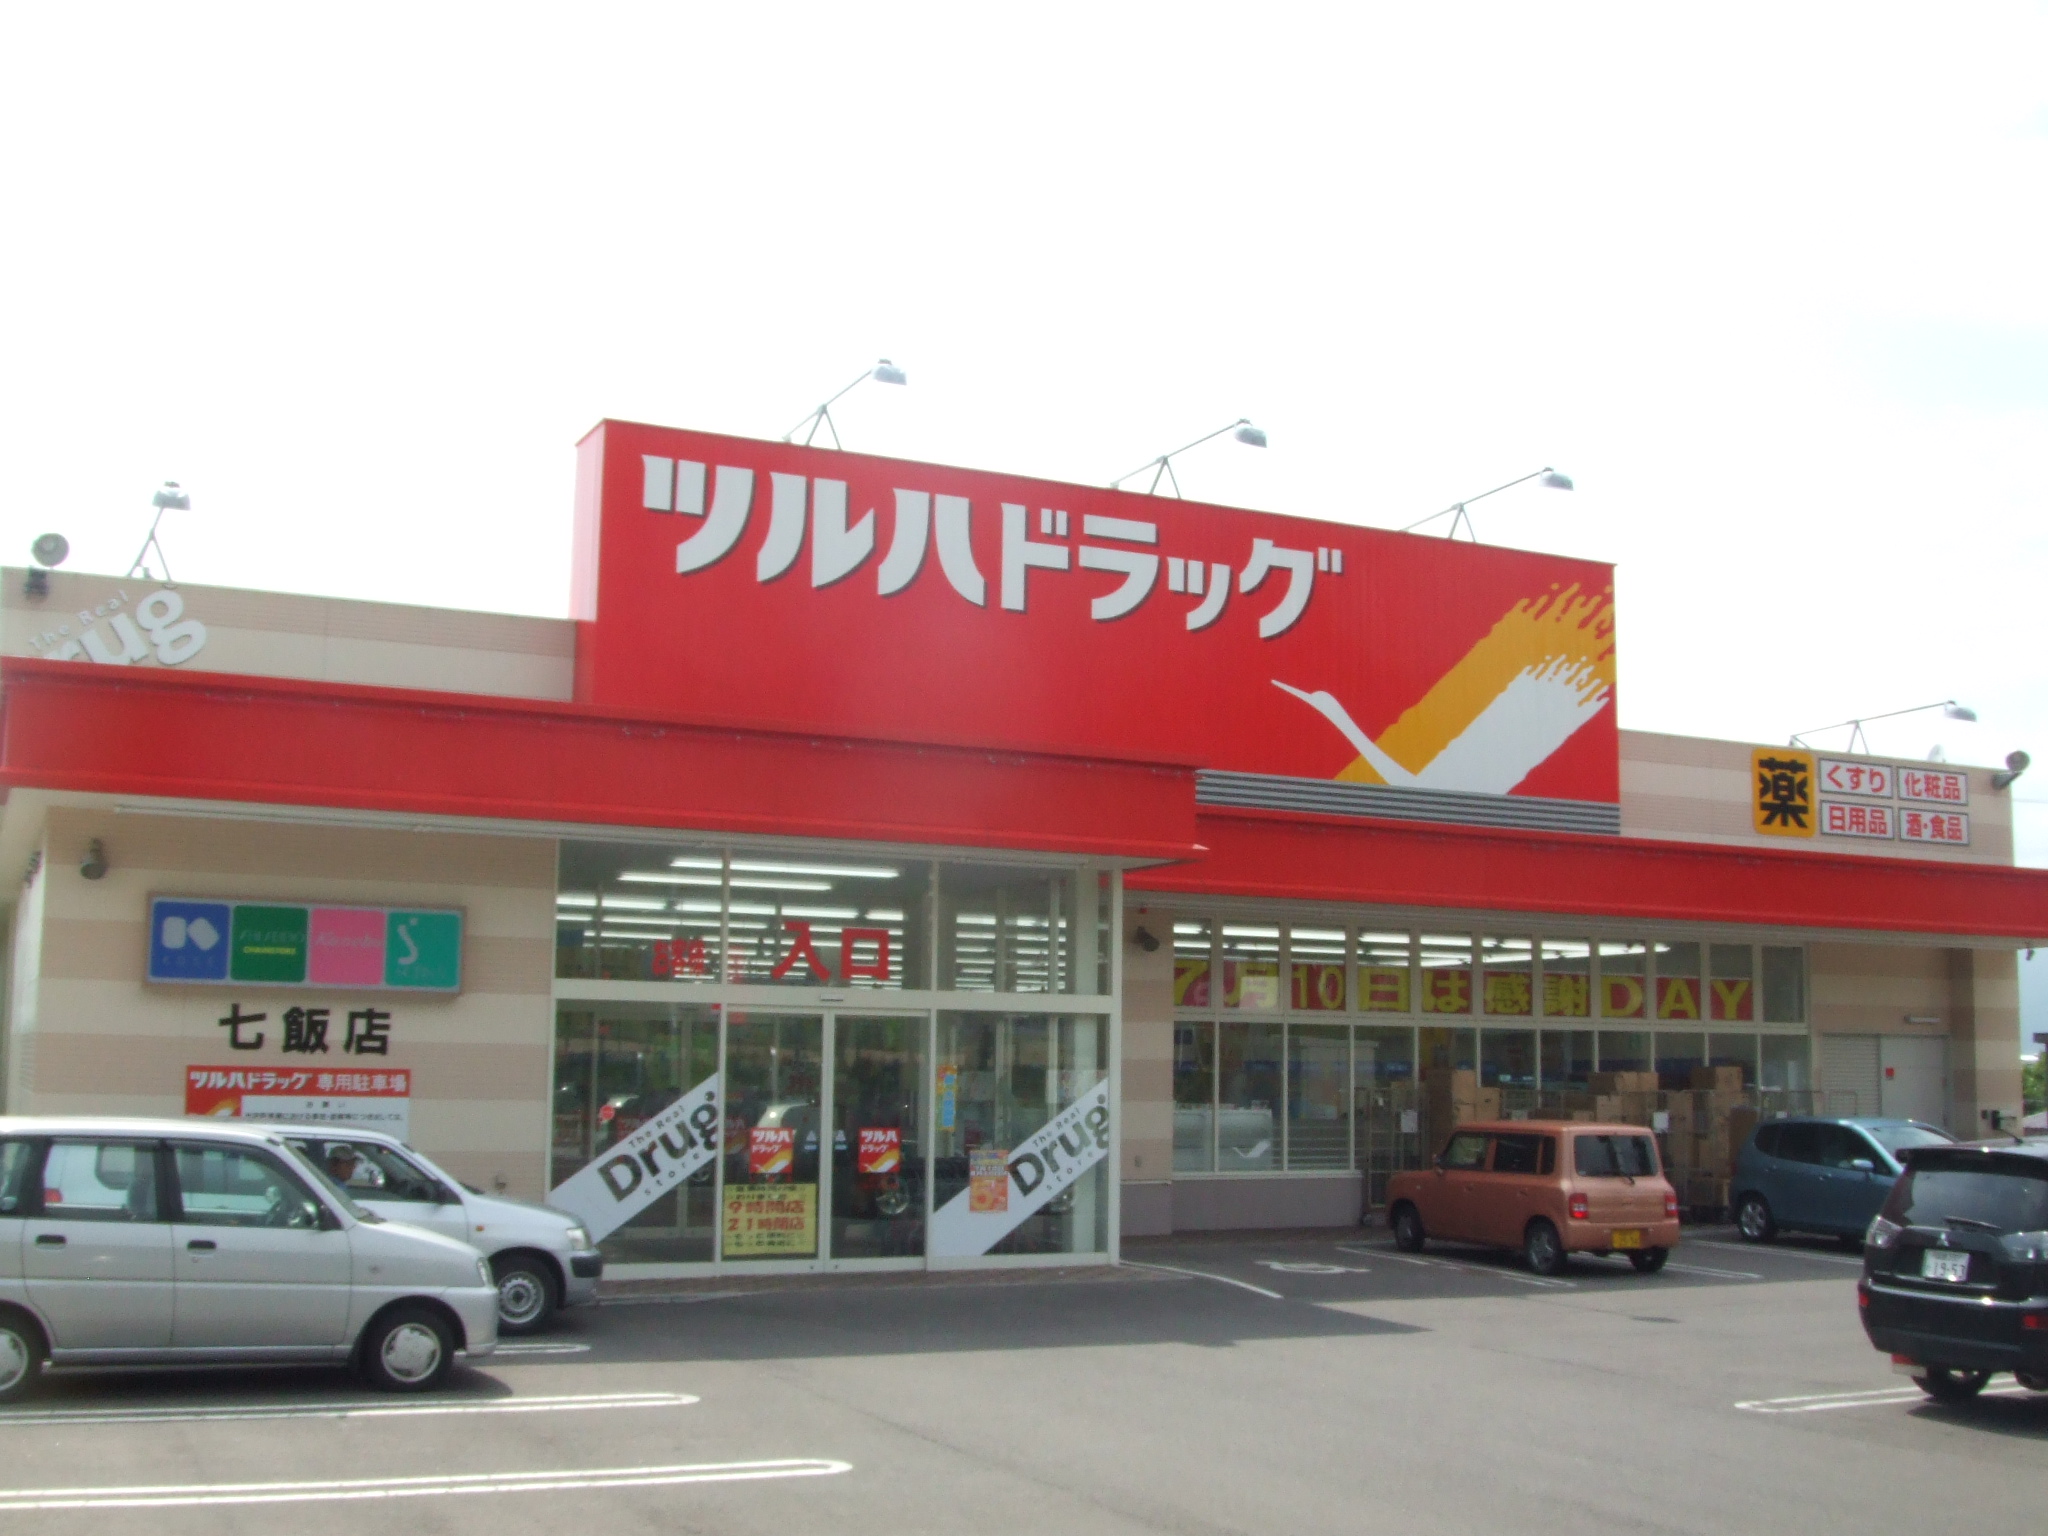 Dorakkusutoa. Tsuruha drag Nanae shop 1158m until (drugstore)